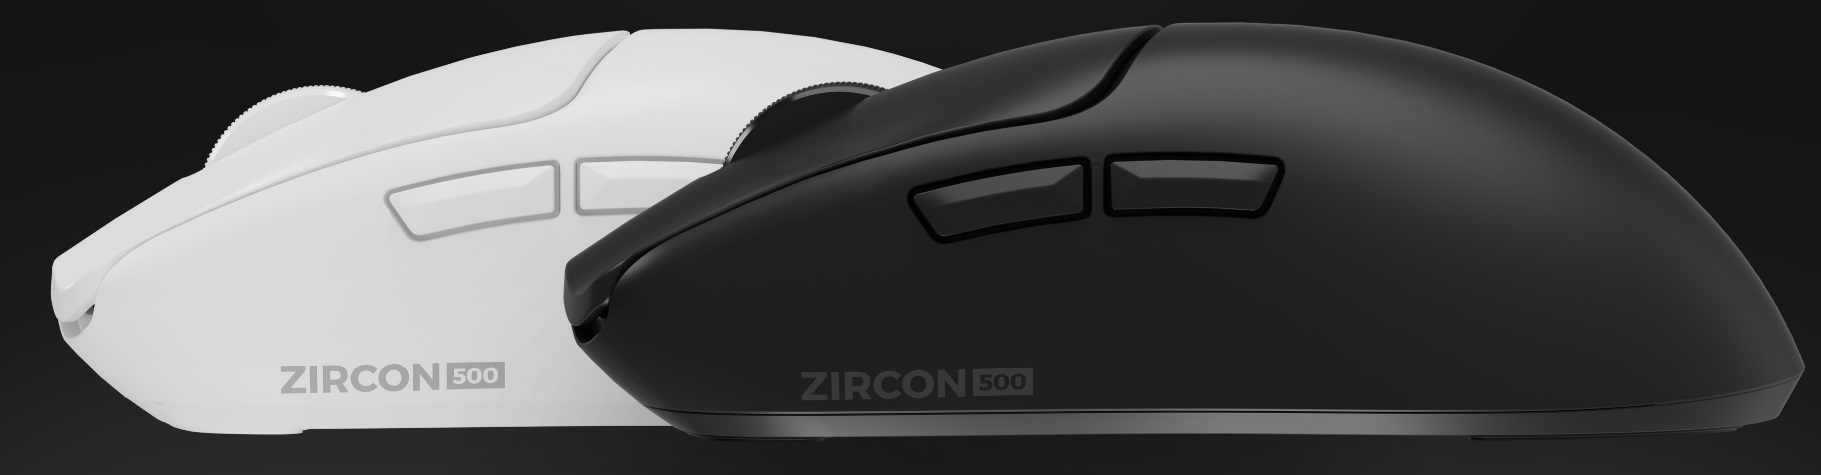 Zircon 500